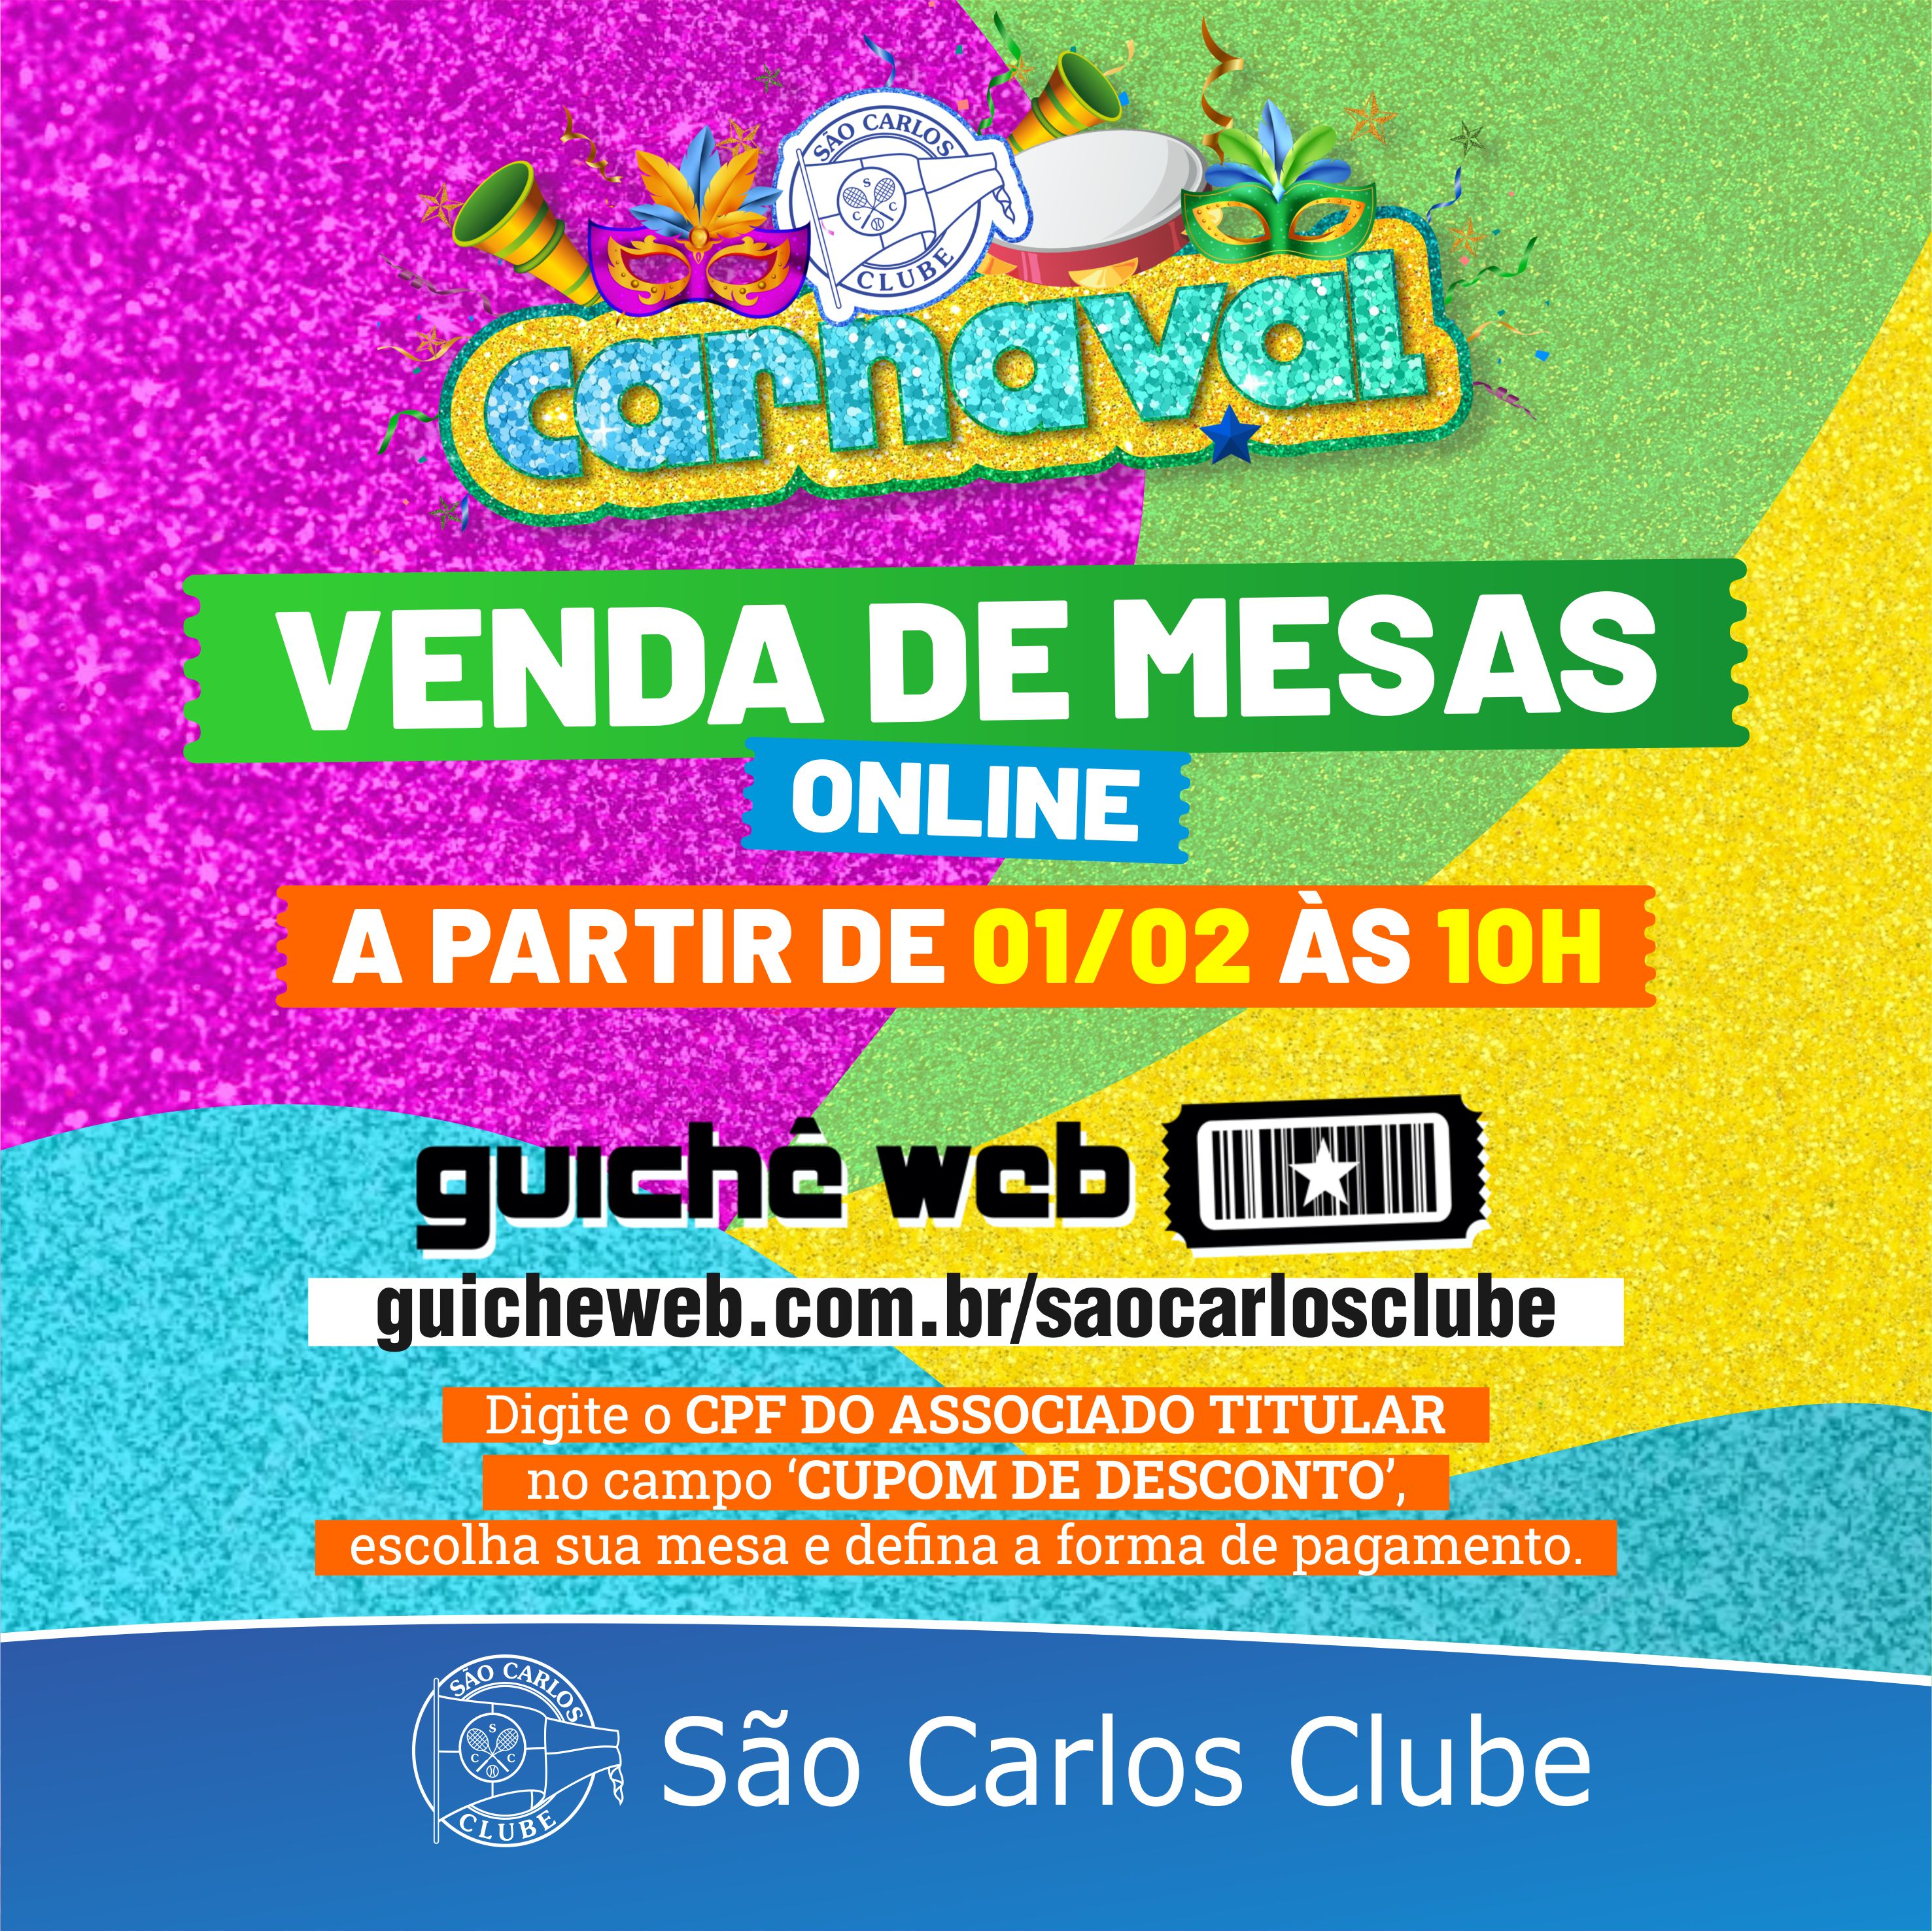 Rio tem blocos já nesta quarta: veja a lista completa até o fim do carnaval, Carnaval 2023 no Rio de Janeiro